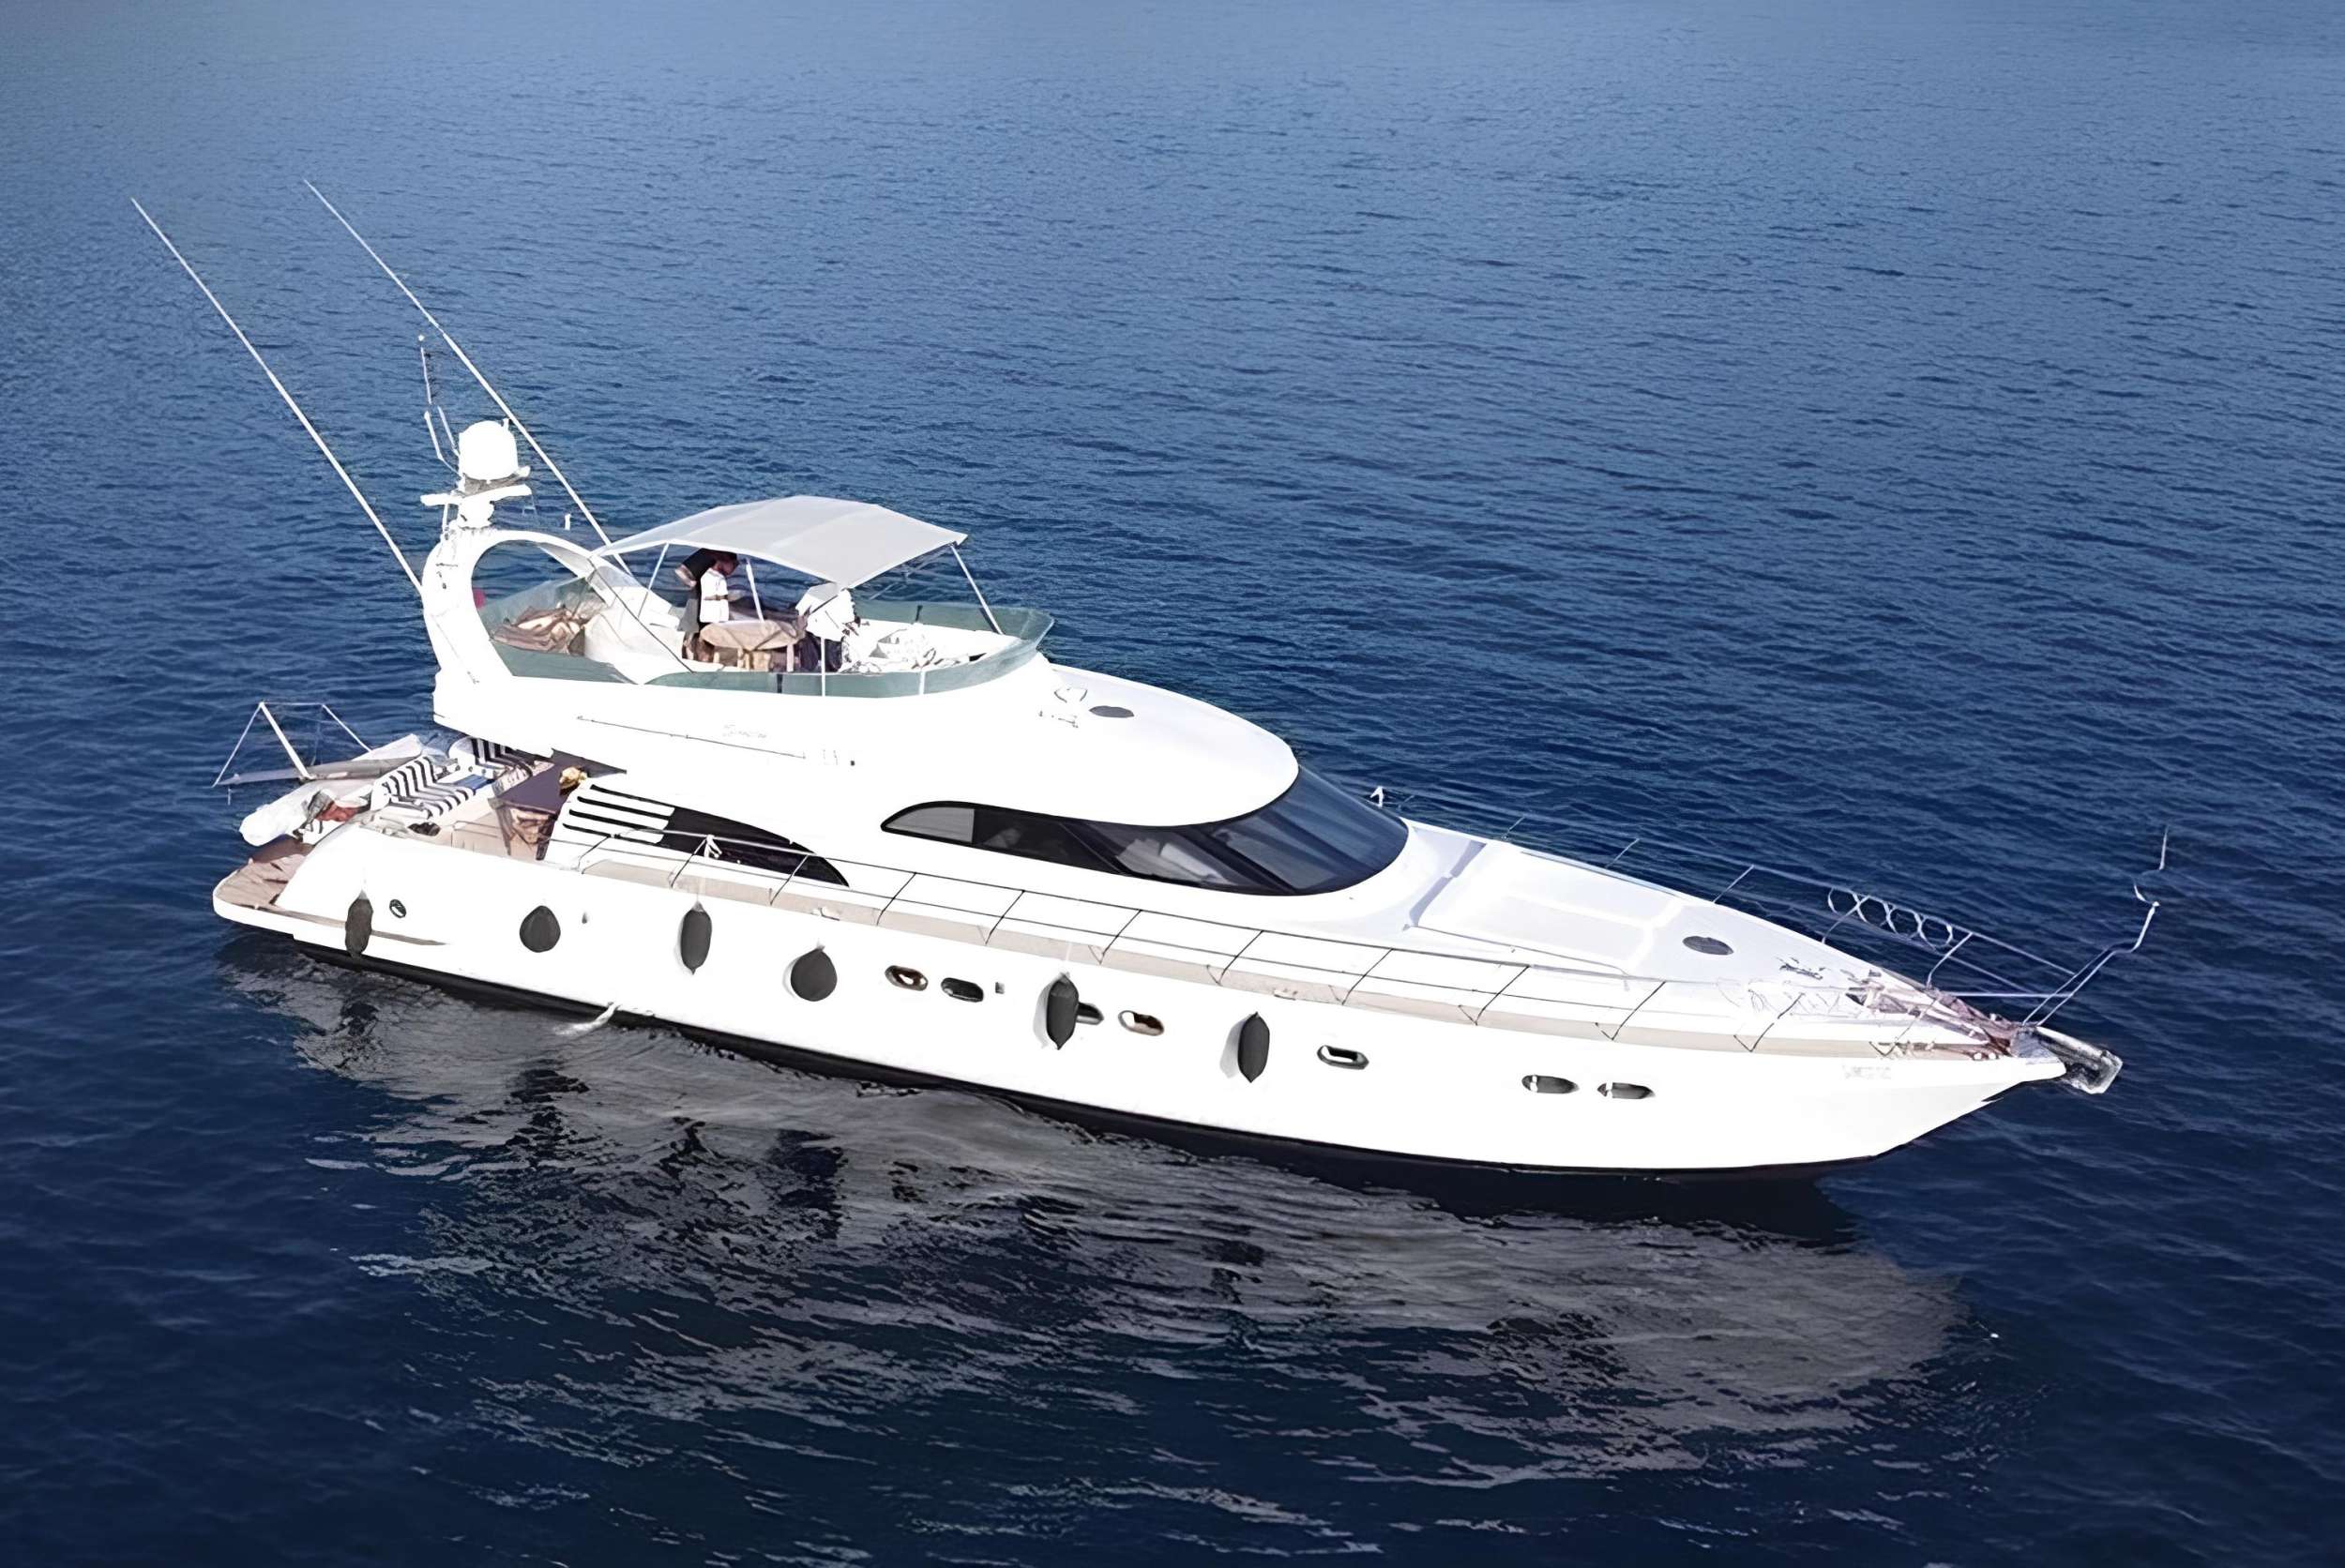 SIROCCO - Motor Boat Charter Turkey & Boat hire in Turkey 1